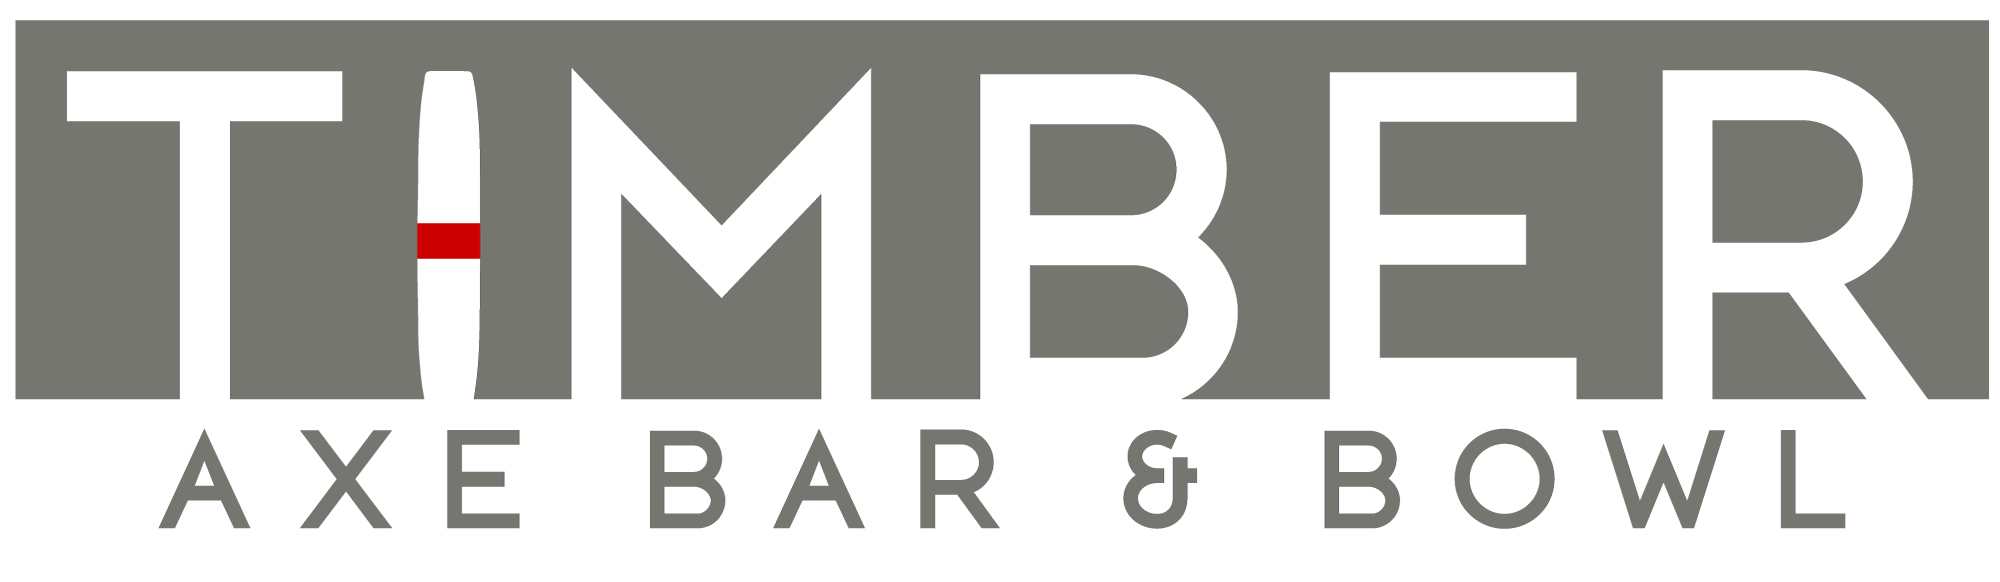 Timber Ax Bar Bowl Logo